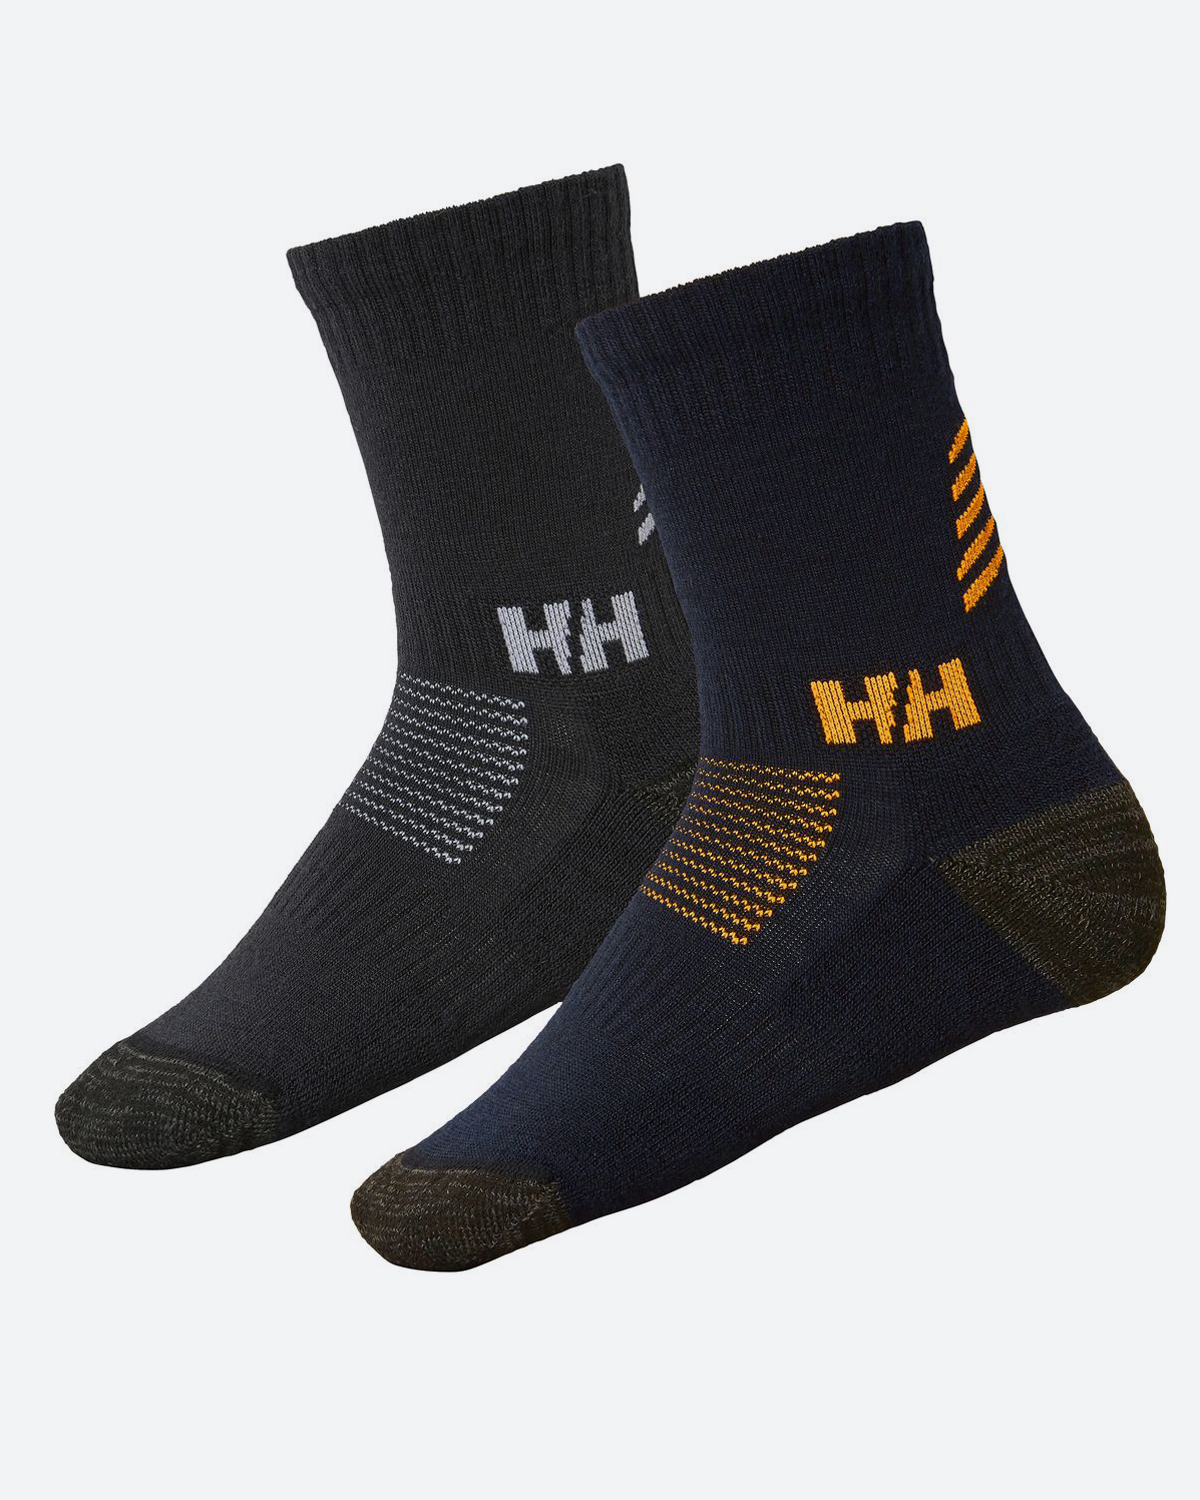 Купить рабочие носки. Helly Hansen Socks. Носки Helly Hansen. Шерстяные носки Helly Hansen Wool. Строительные носки рабочие.